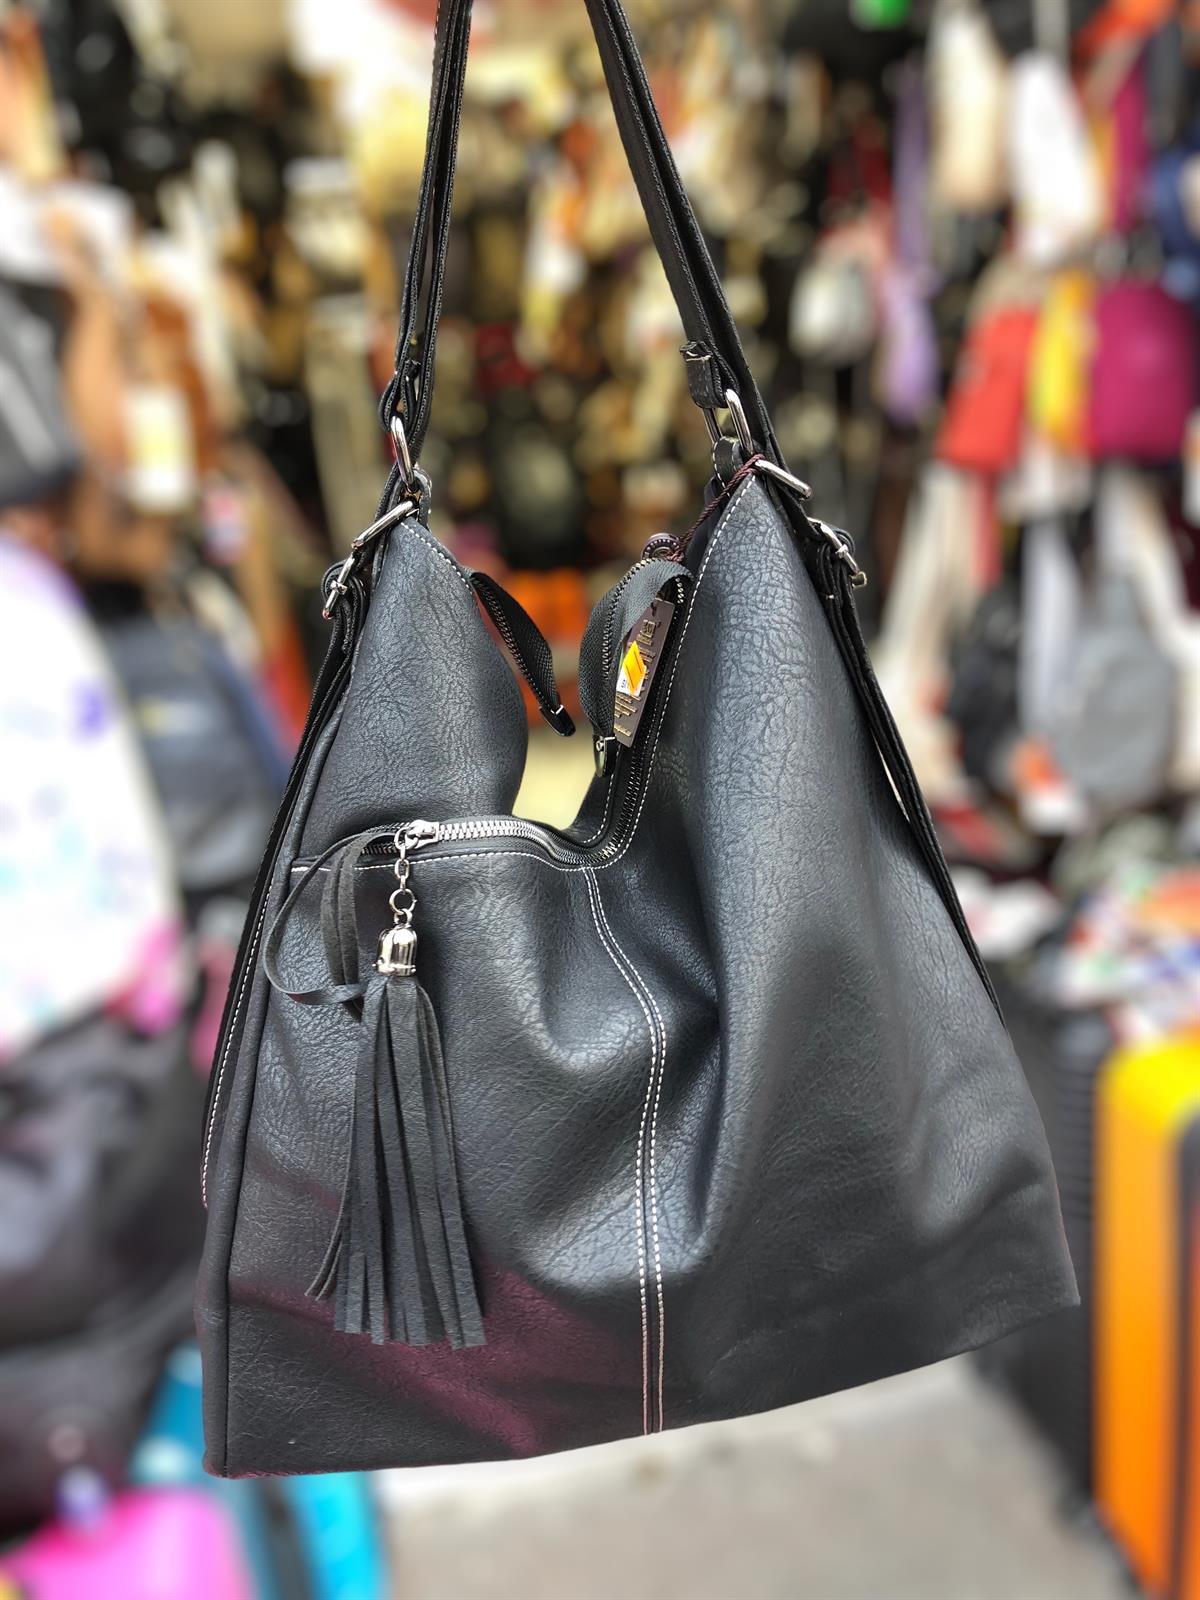 Kadın sırt ve kol çantası modeli yumuşak deri ebat 40 cm 35  |elizabell.com.tr